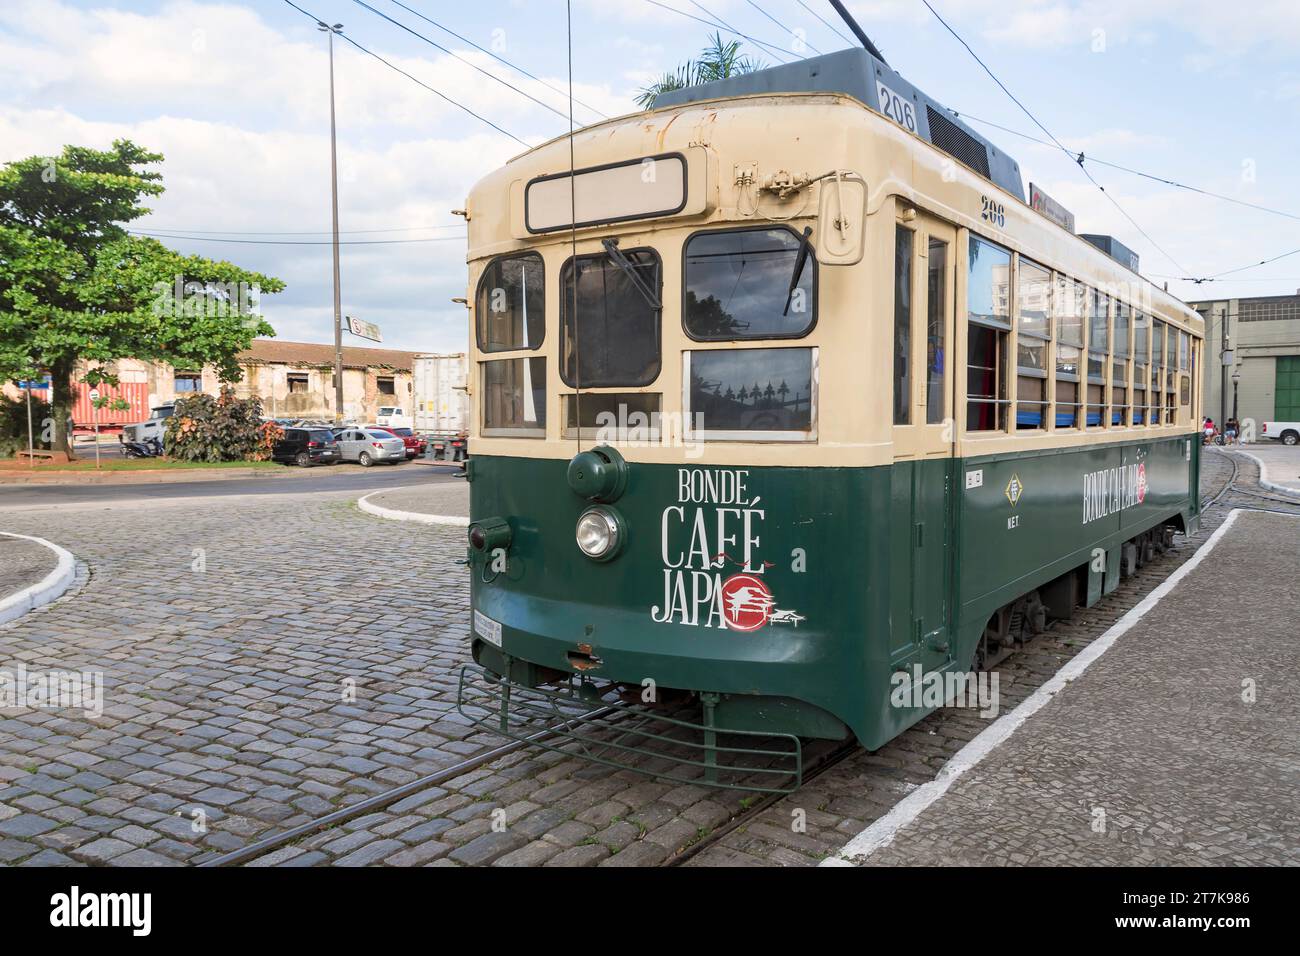 Santos City, Brésil. Tram japonais type 206 à partir de 1950. Chemin de fer électrique de Nagasaki. Maintenant sur la ligne touristique comme Bonde café Japon. (Tram café Japon). Banque D'Images